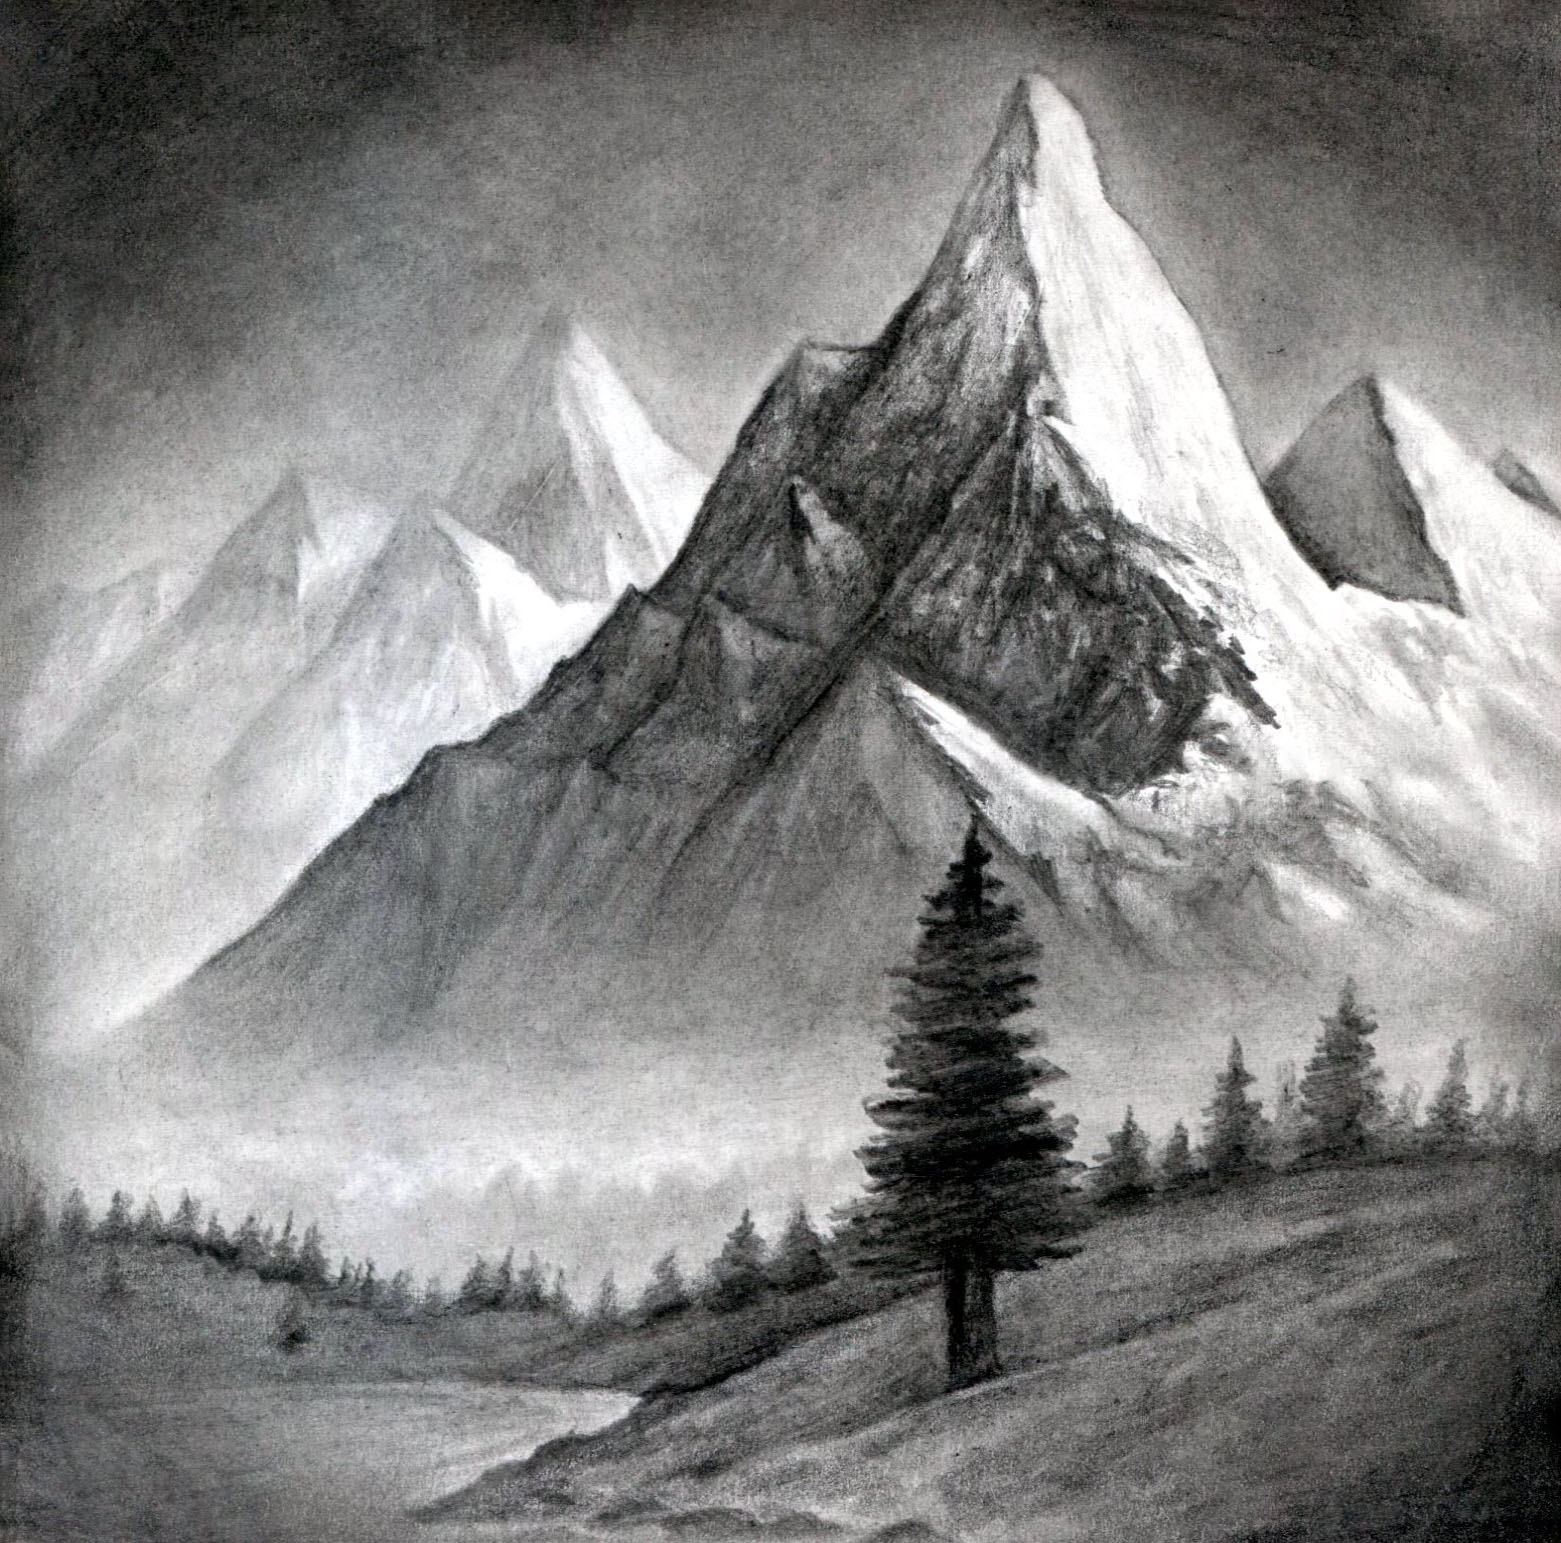 Hướng dẫn vẽ tranh phong cảnh mùa đông bằng màu nước  Zest Art